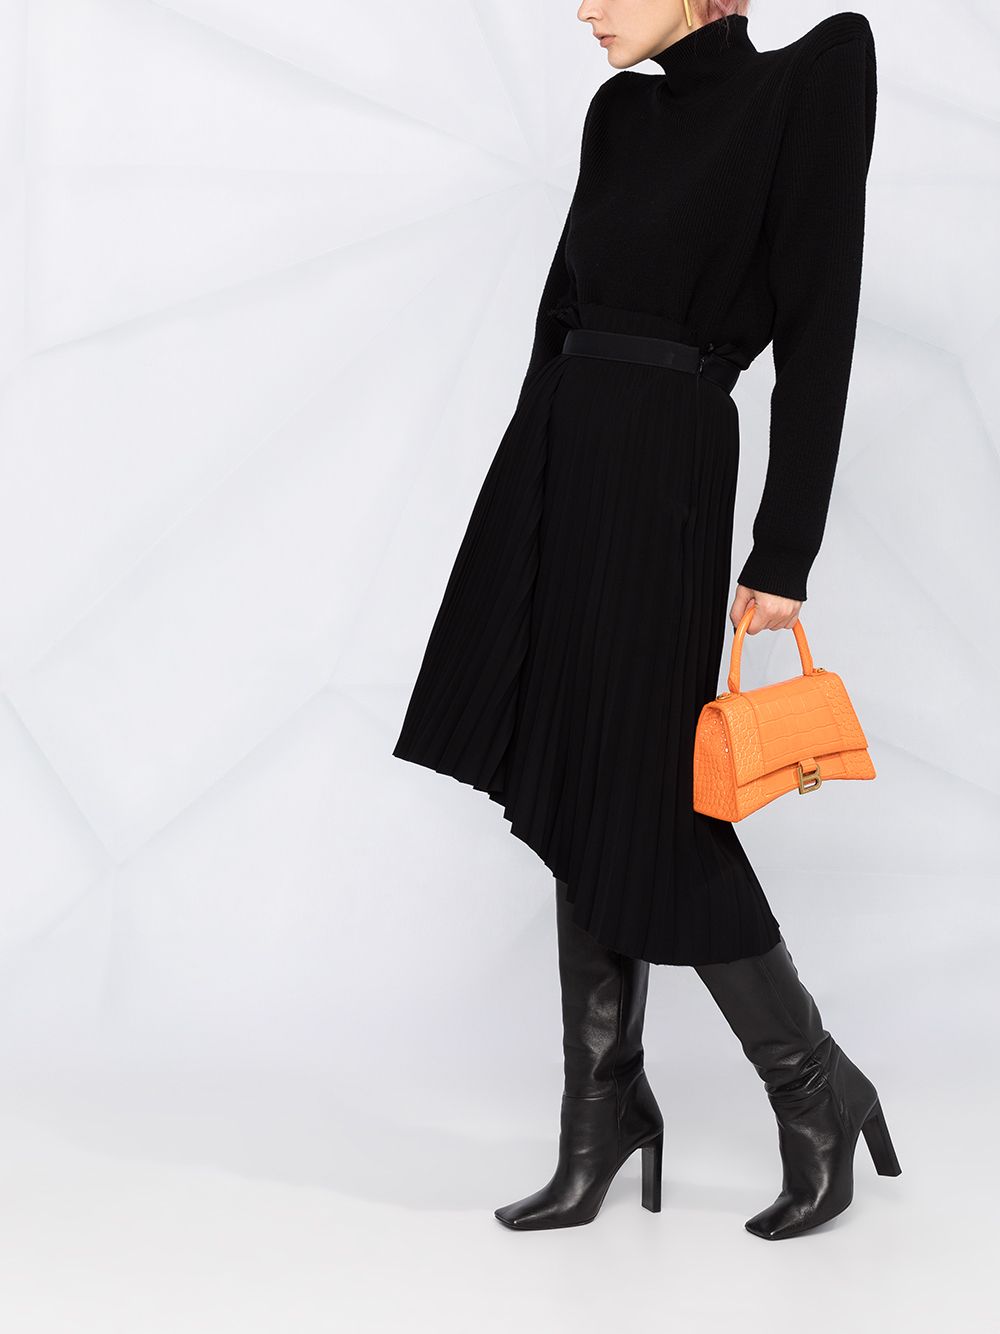 фото Balenciaga джемпер с высоким воротником и объемными плечами